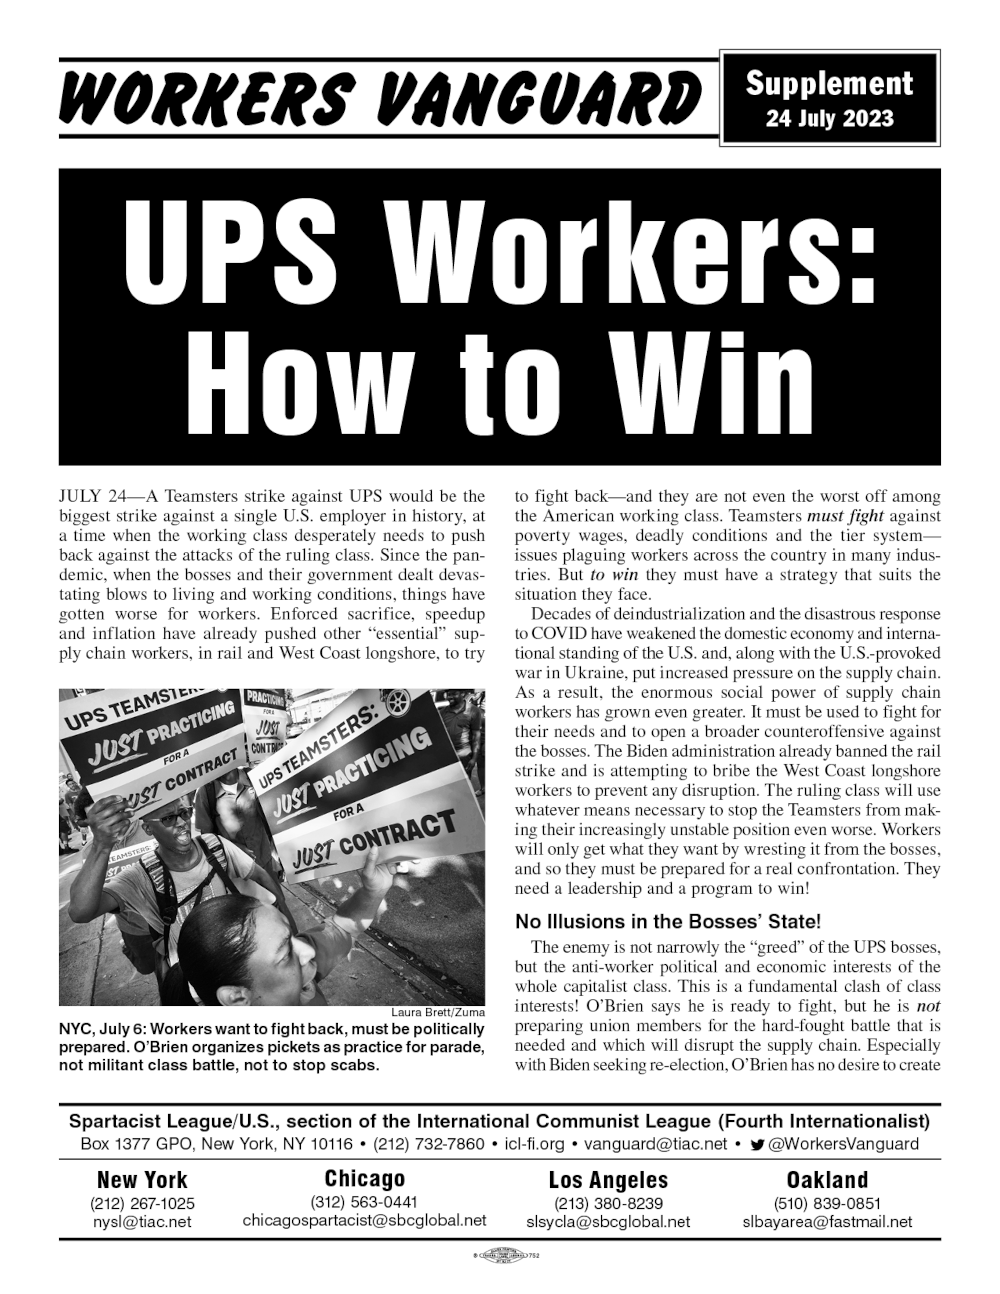 Workers Vanguard Extra  |  24. Juli 2023